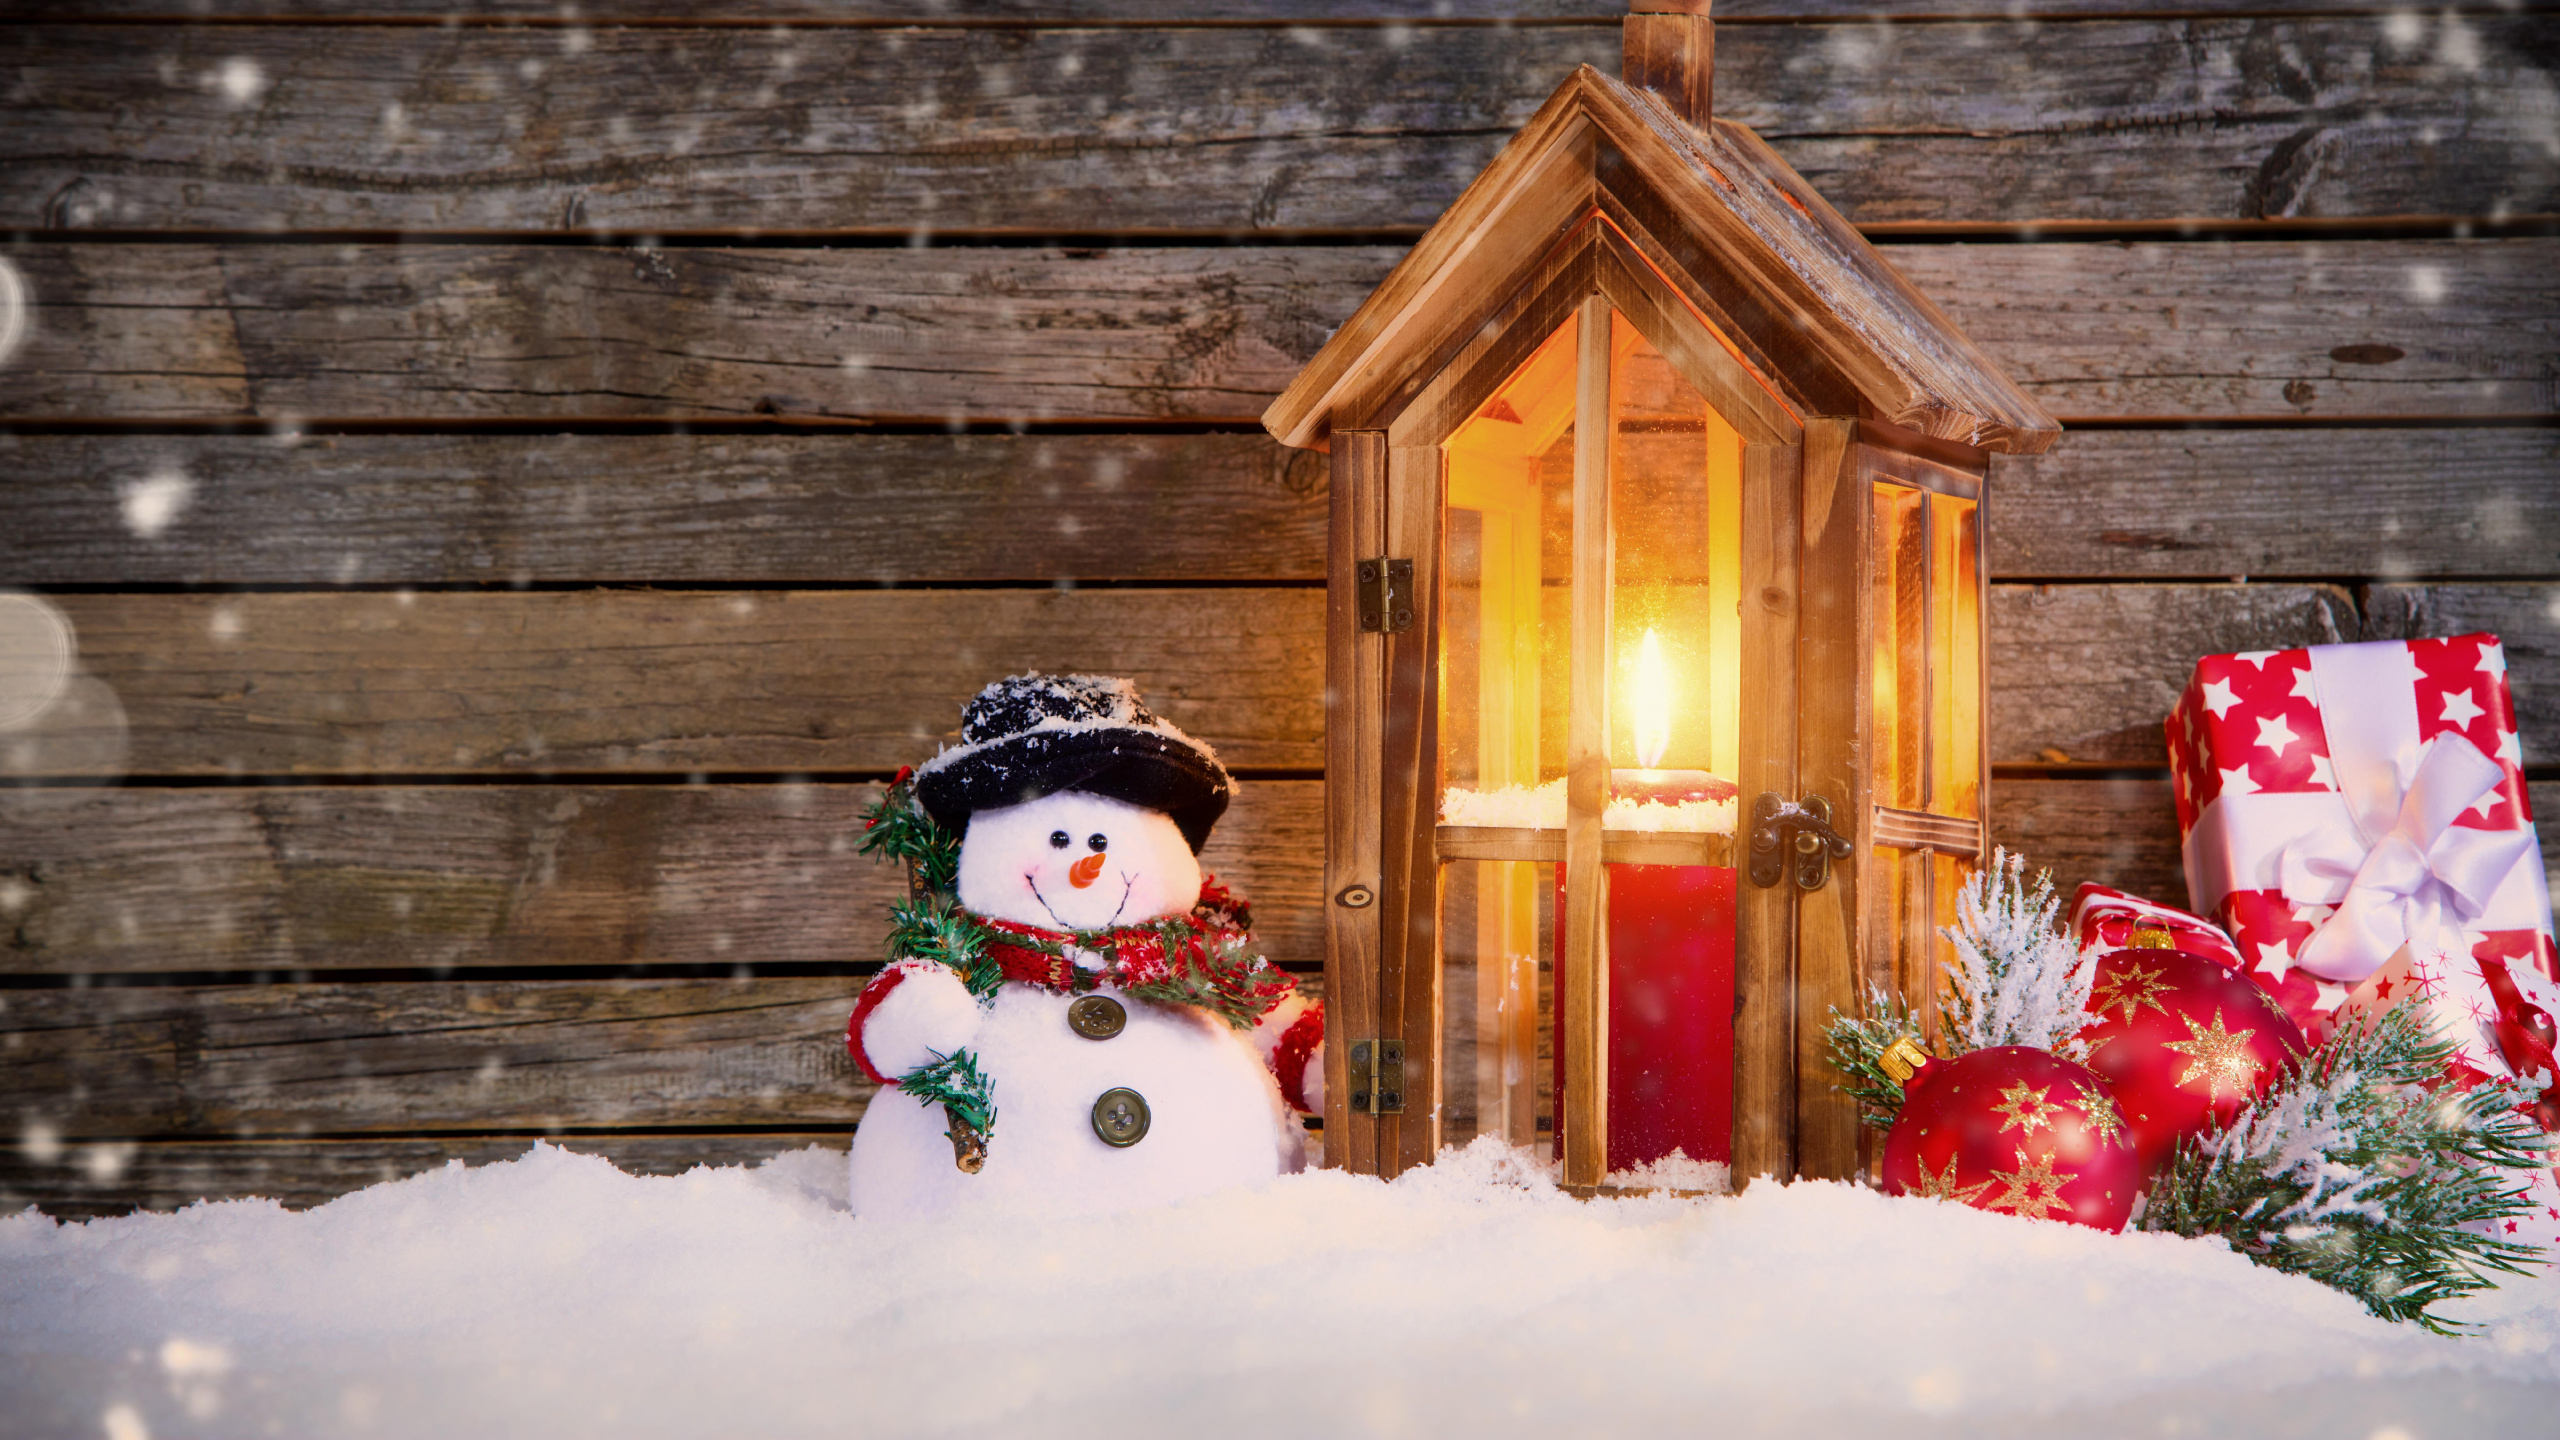 圣诞节那天, 雪人, 圣诞装饰, 圣诞节的装饰品, 冬天 壁纸 2560x1440 允许